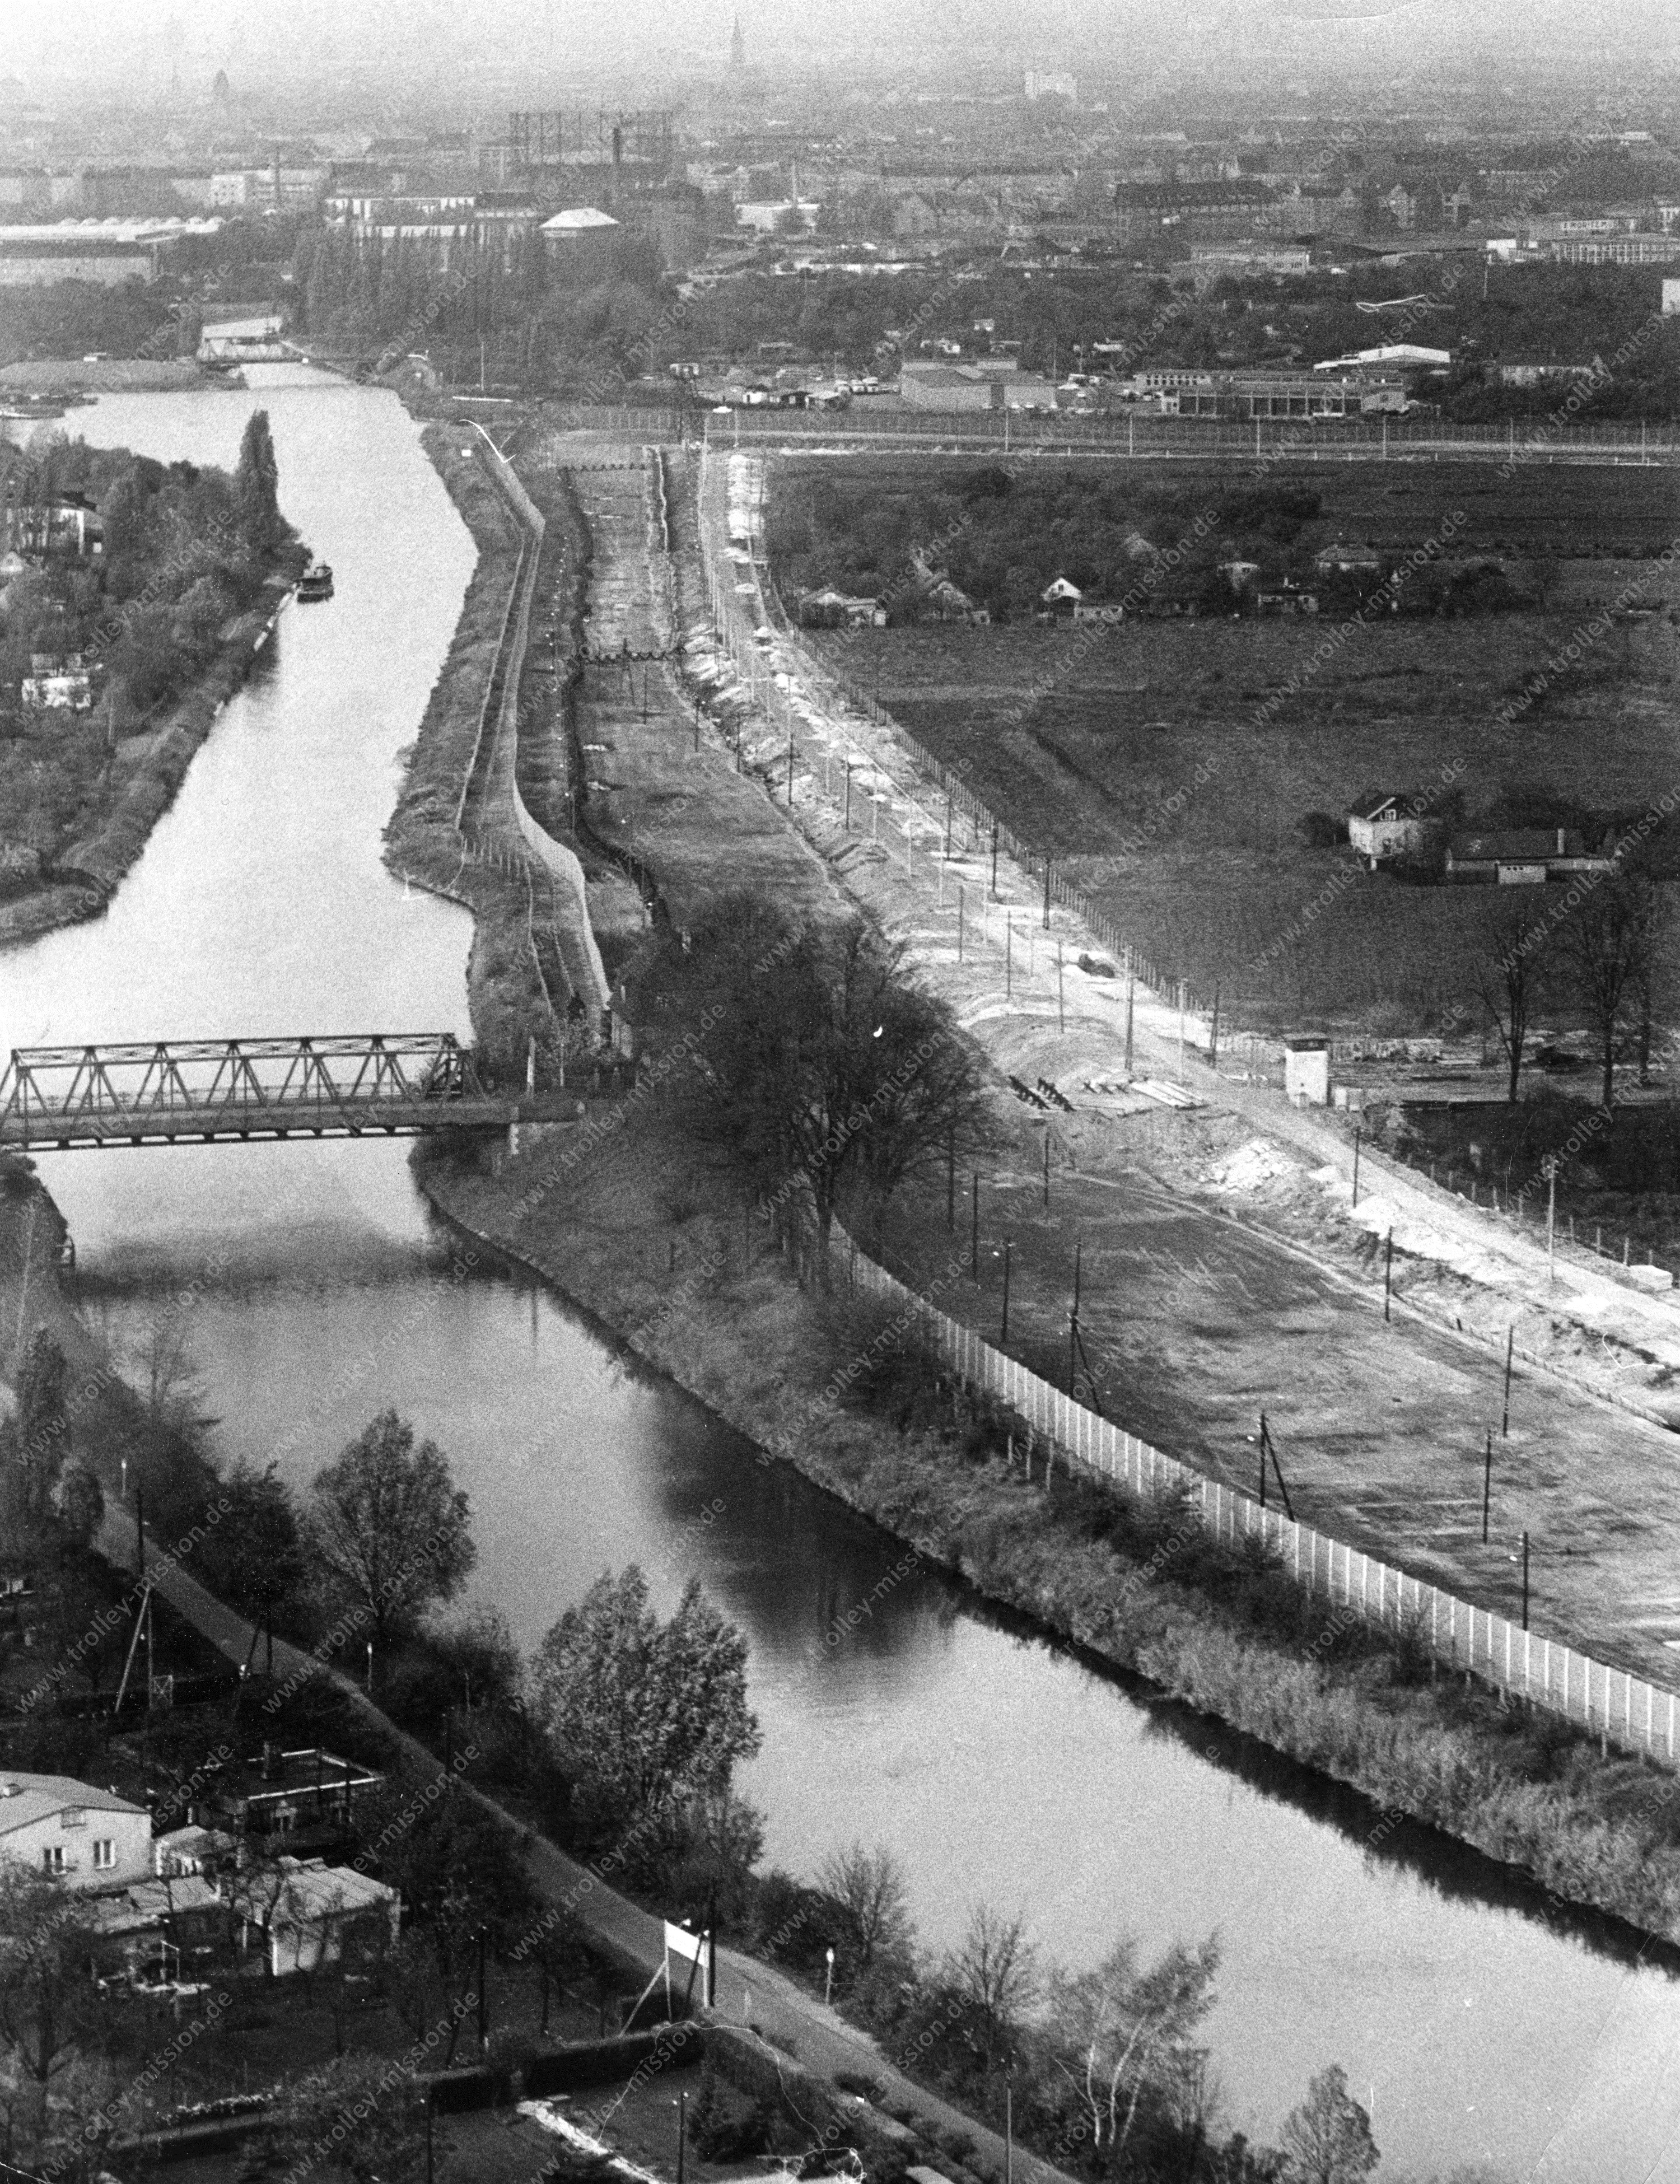 Luftbild Alte Späthbrücke mit Grenze zwischen Ost-Berlin und West-Berlin am Teltowkanal vom 6. November 1967